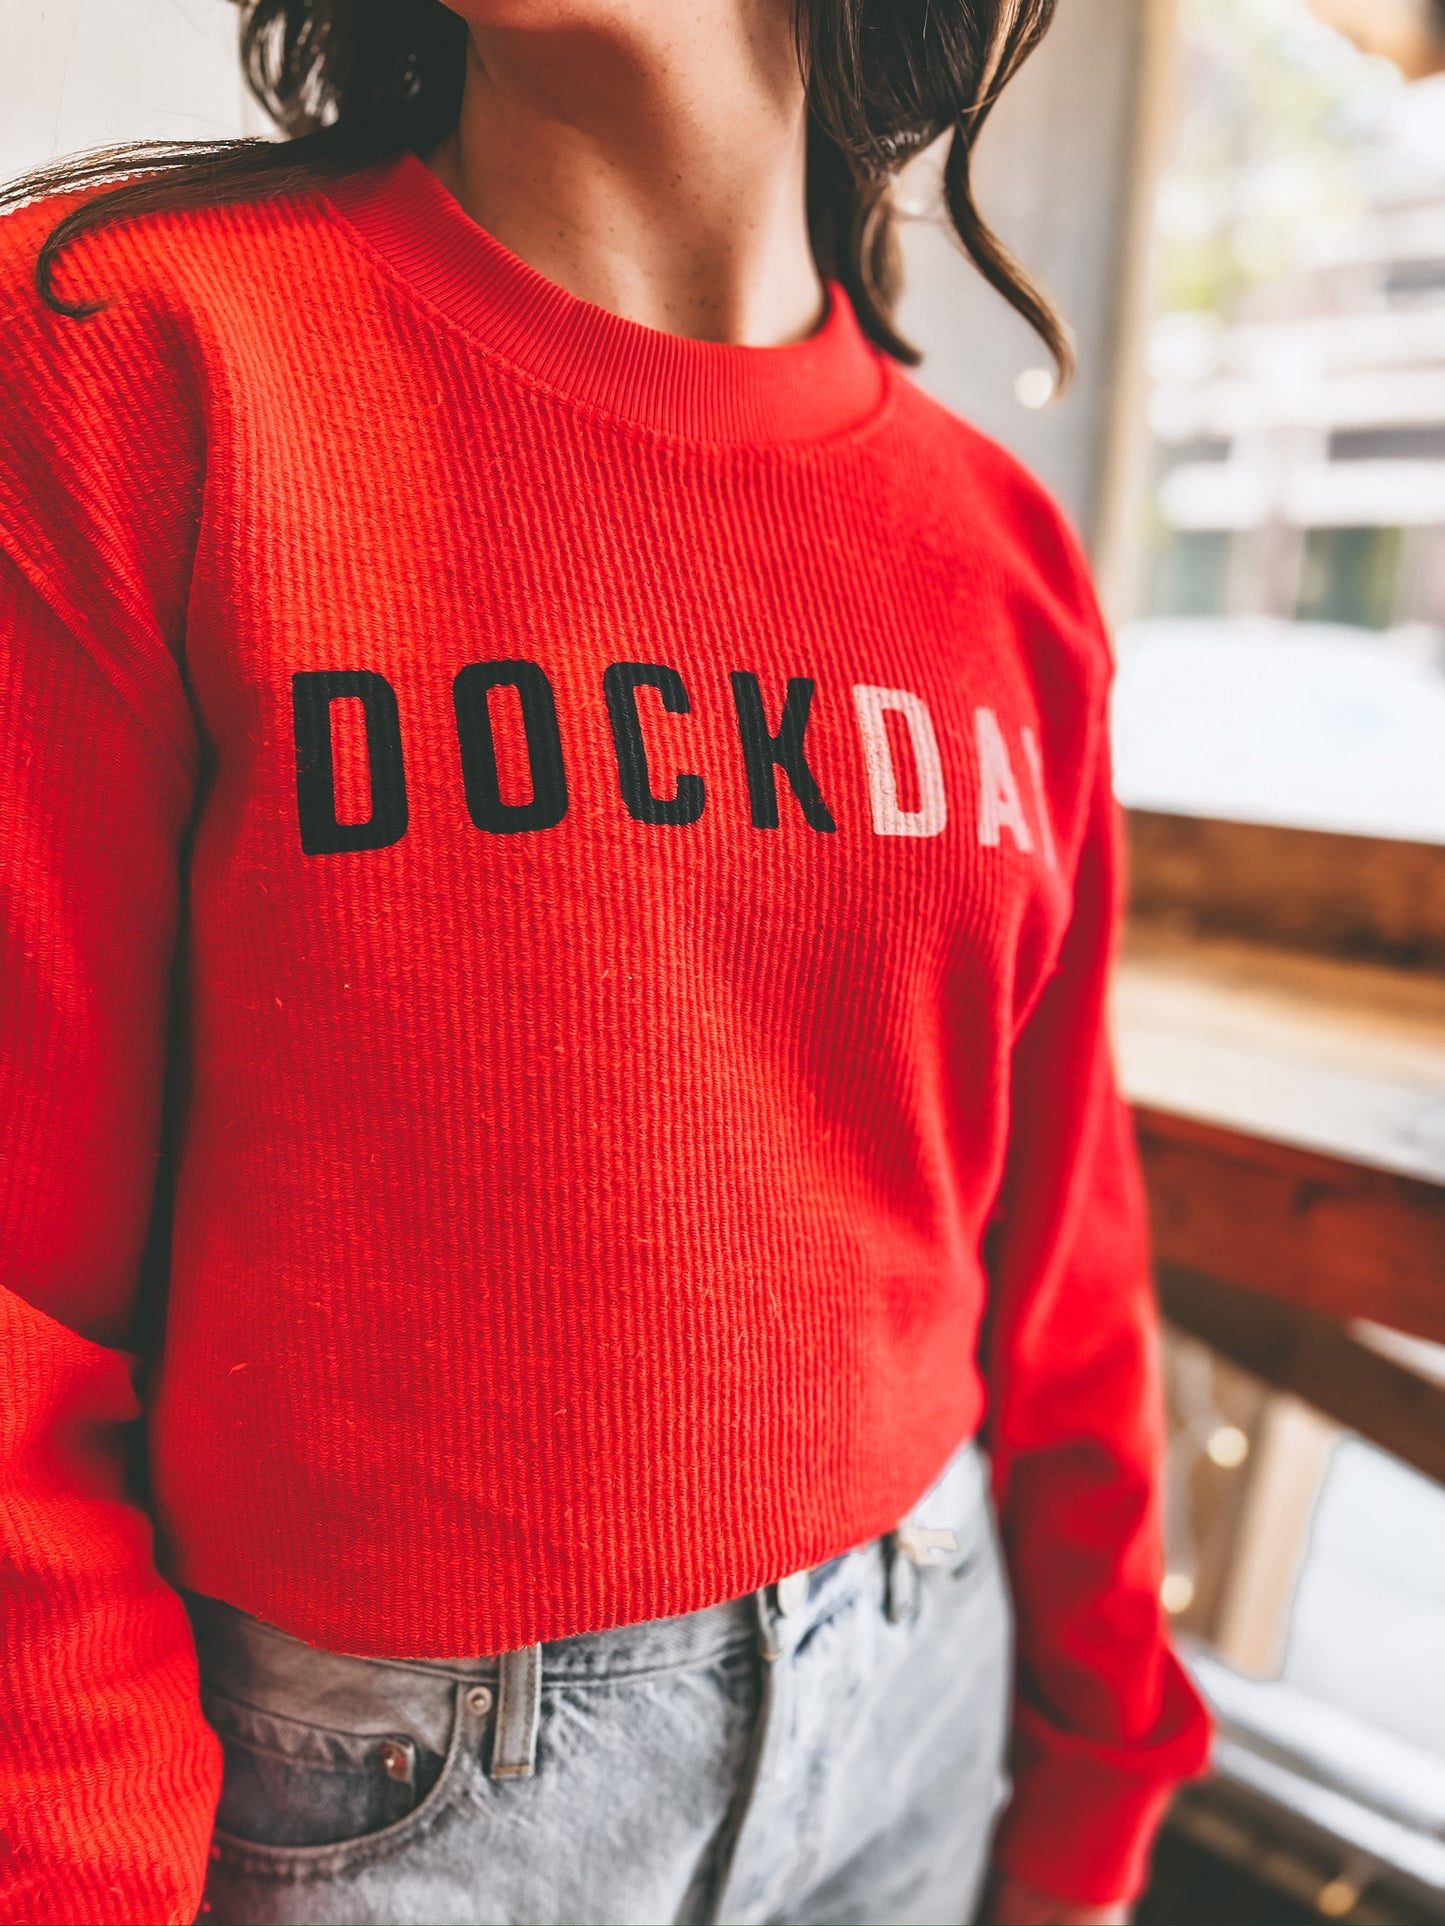 Dock Day Ribbed Sweatshirt